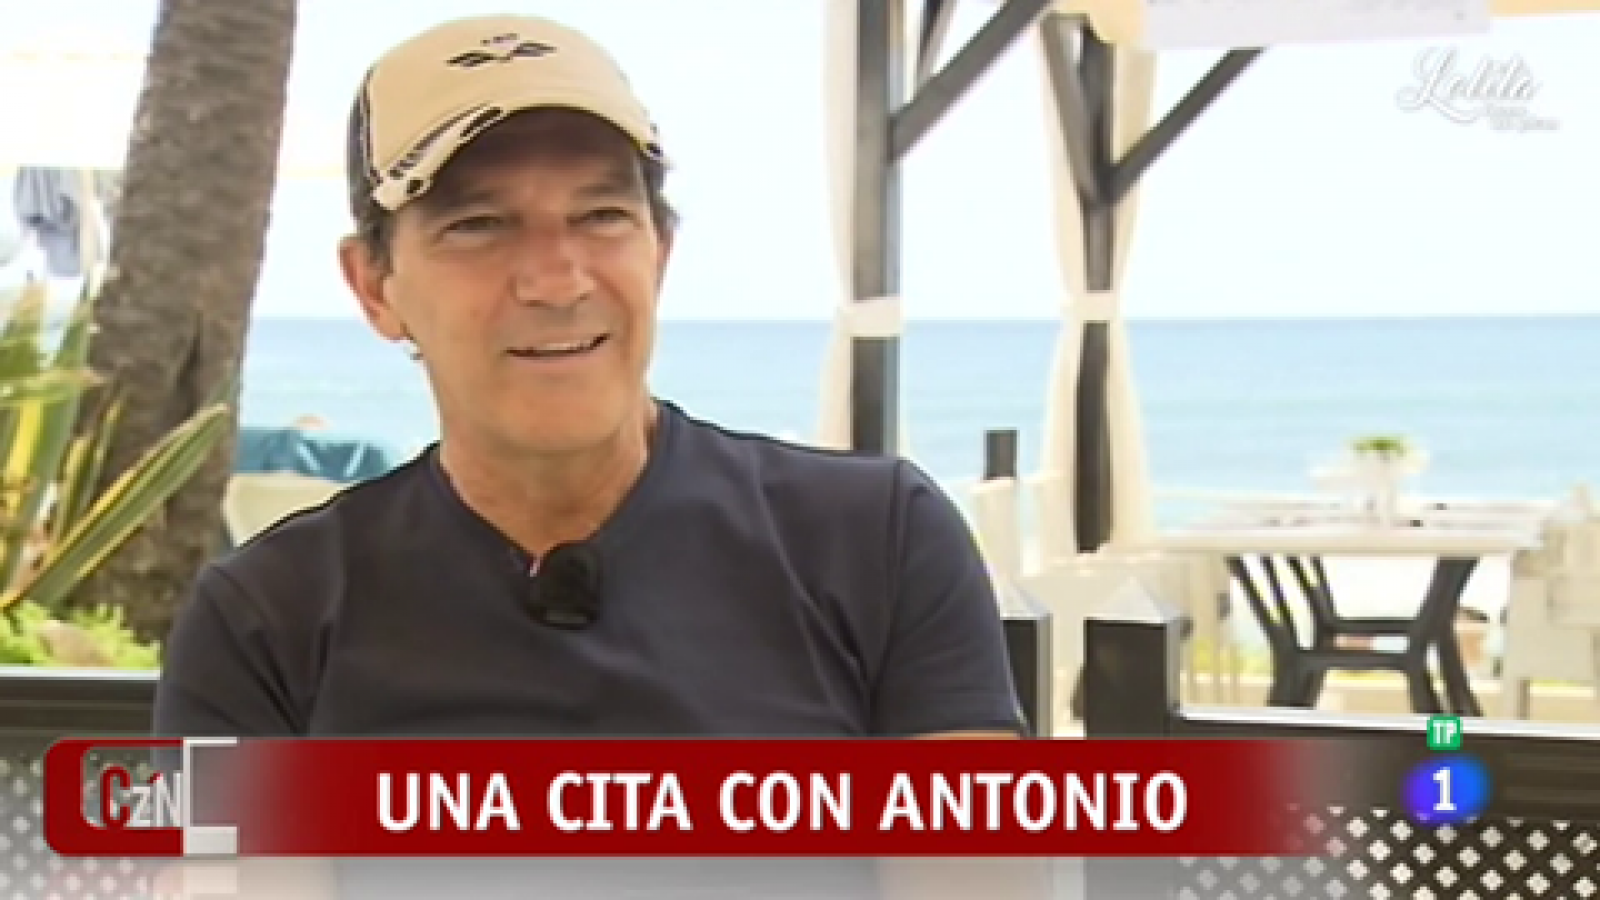 Corazón - Antonio Banderas: "No veo necesario volver a operarme"